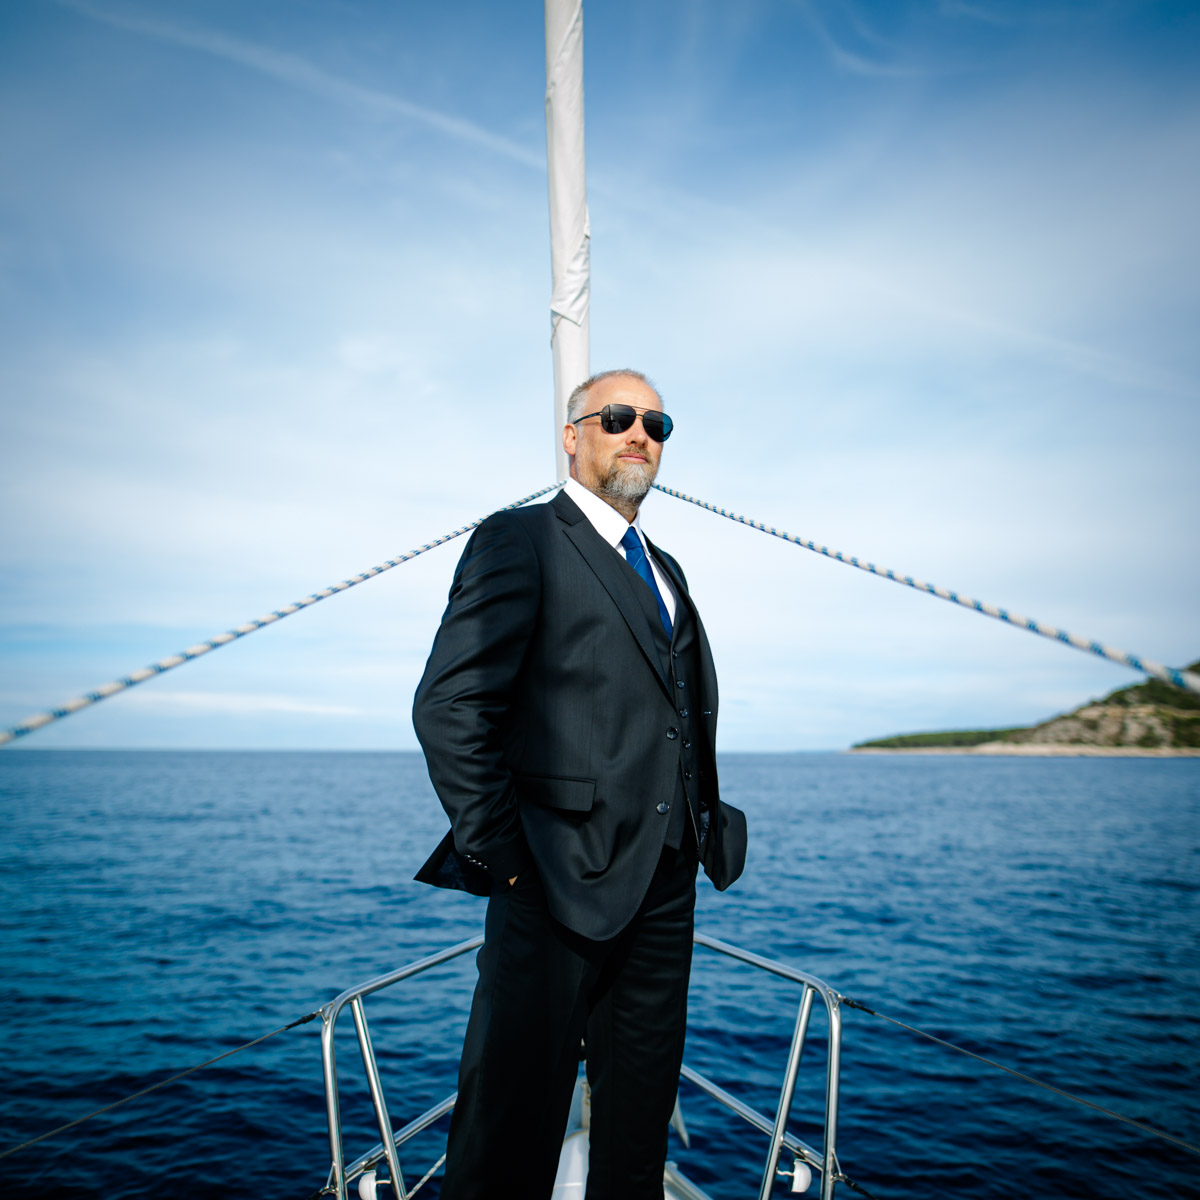 exklusives und ausdruckstarkes Lifestyle Portrait Fotoshooting, Mann im schwarzen Anzug mit Sonnenbrille steht am Bug einer Yacht, dahiner eine Insel und der Horizont des Meeres :: photo copyright Karin Bergmann